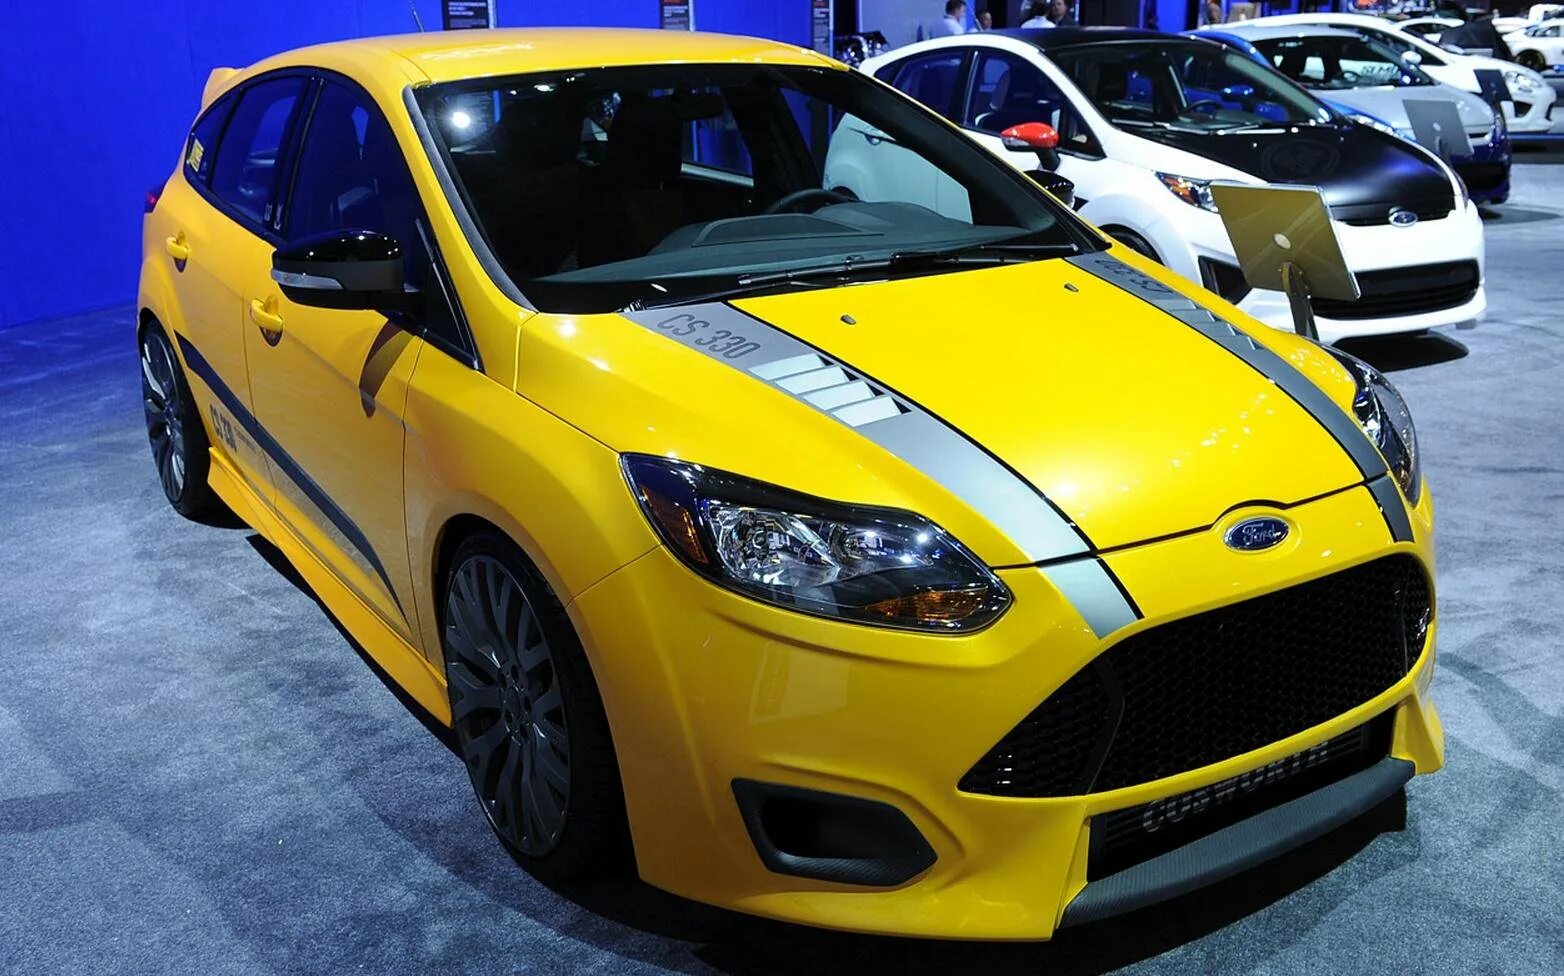 Желтый в реальной жизни. Форд фокус 2 желтый. Ford Focus 3 хэтчбек желтый. Форд фокус 2 универсал желтый. Желтый Форд фокус 2 хэтчбек.